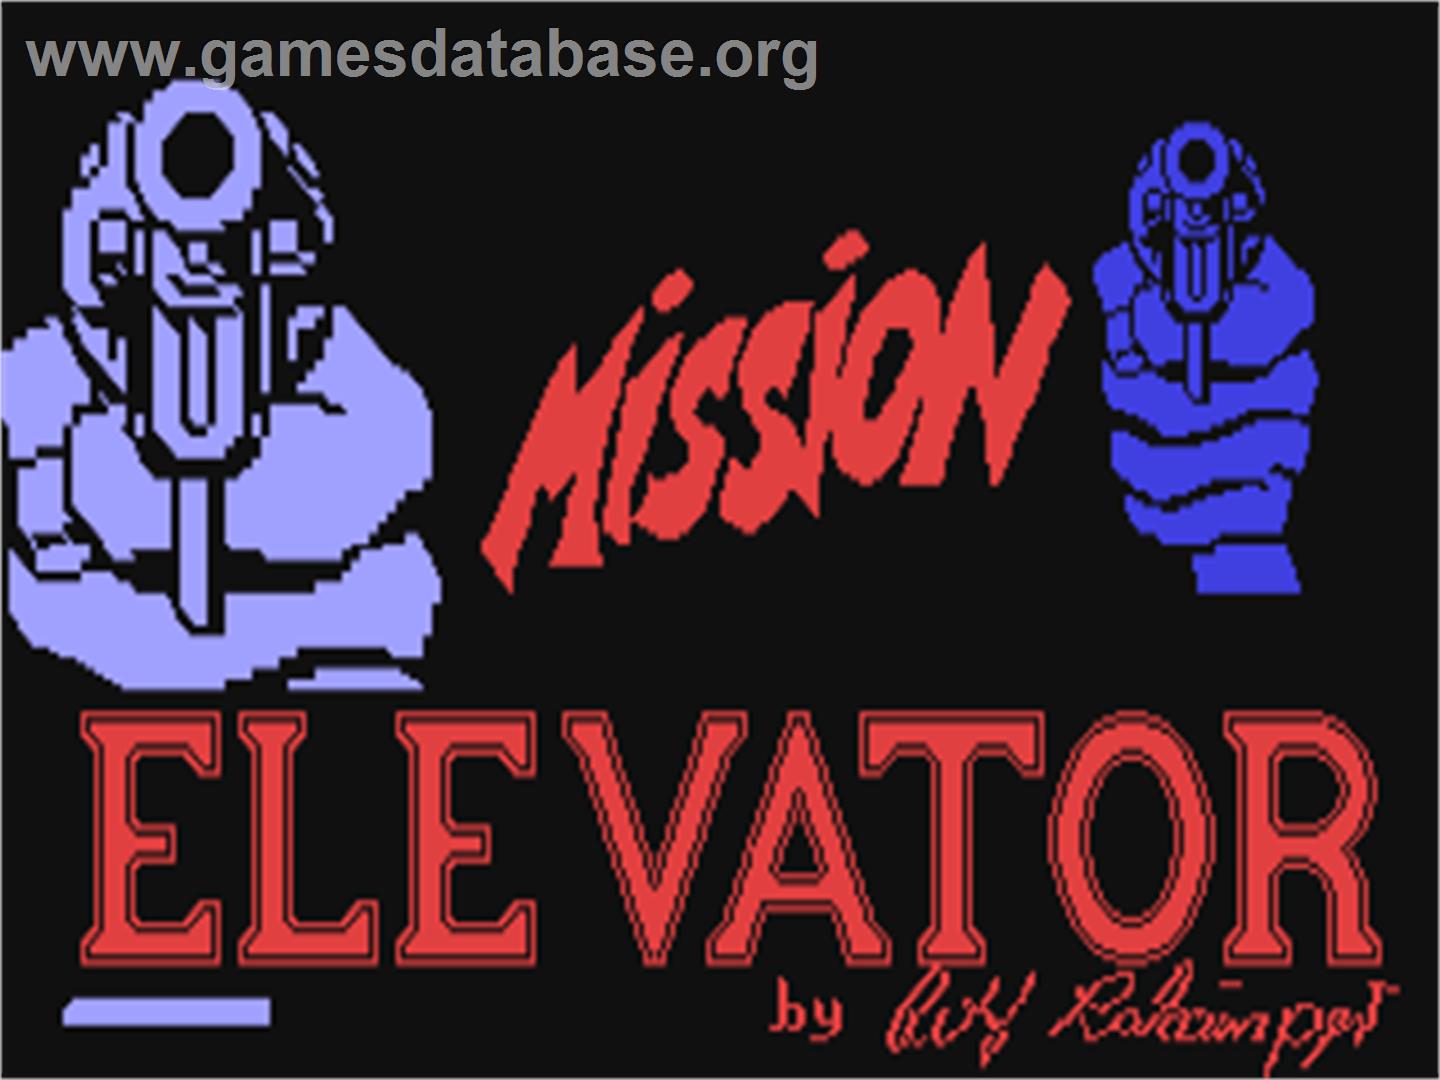 Mission Elevator - Commodore 64 - Artwork - Title Screen